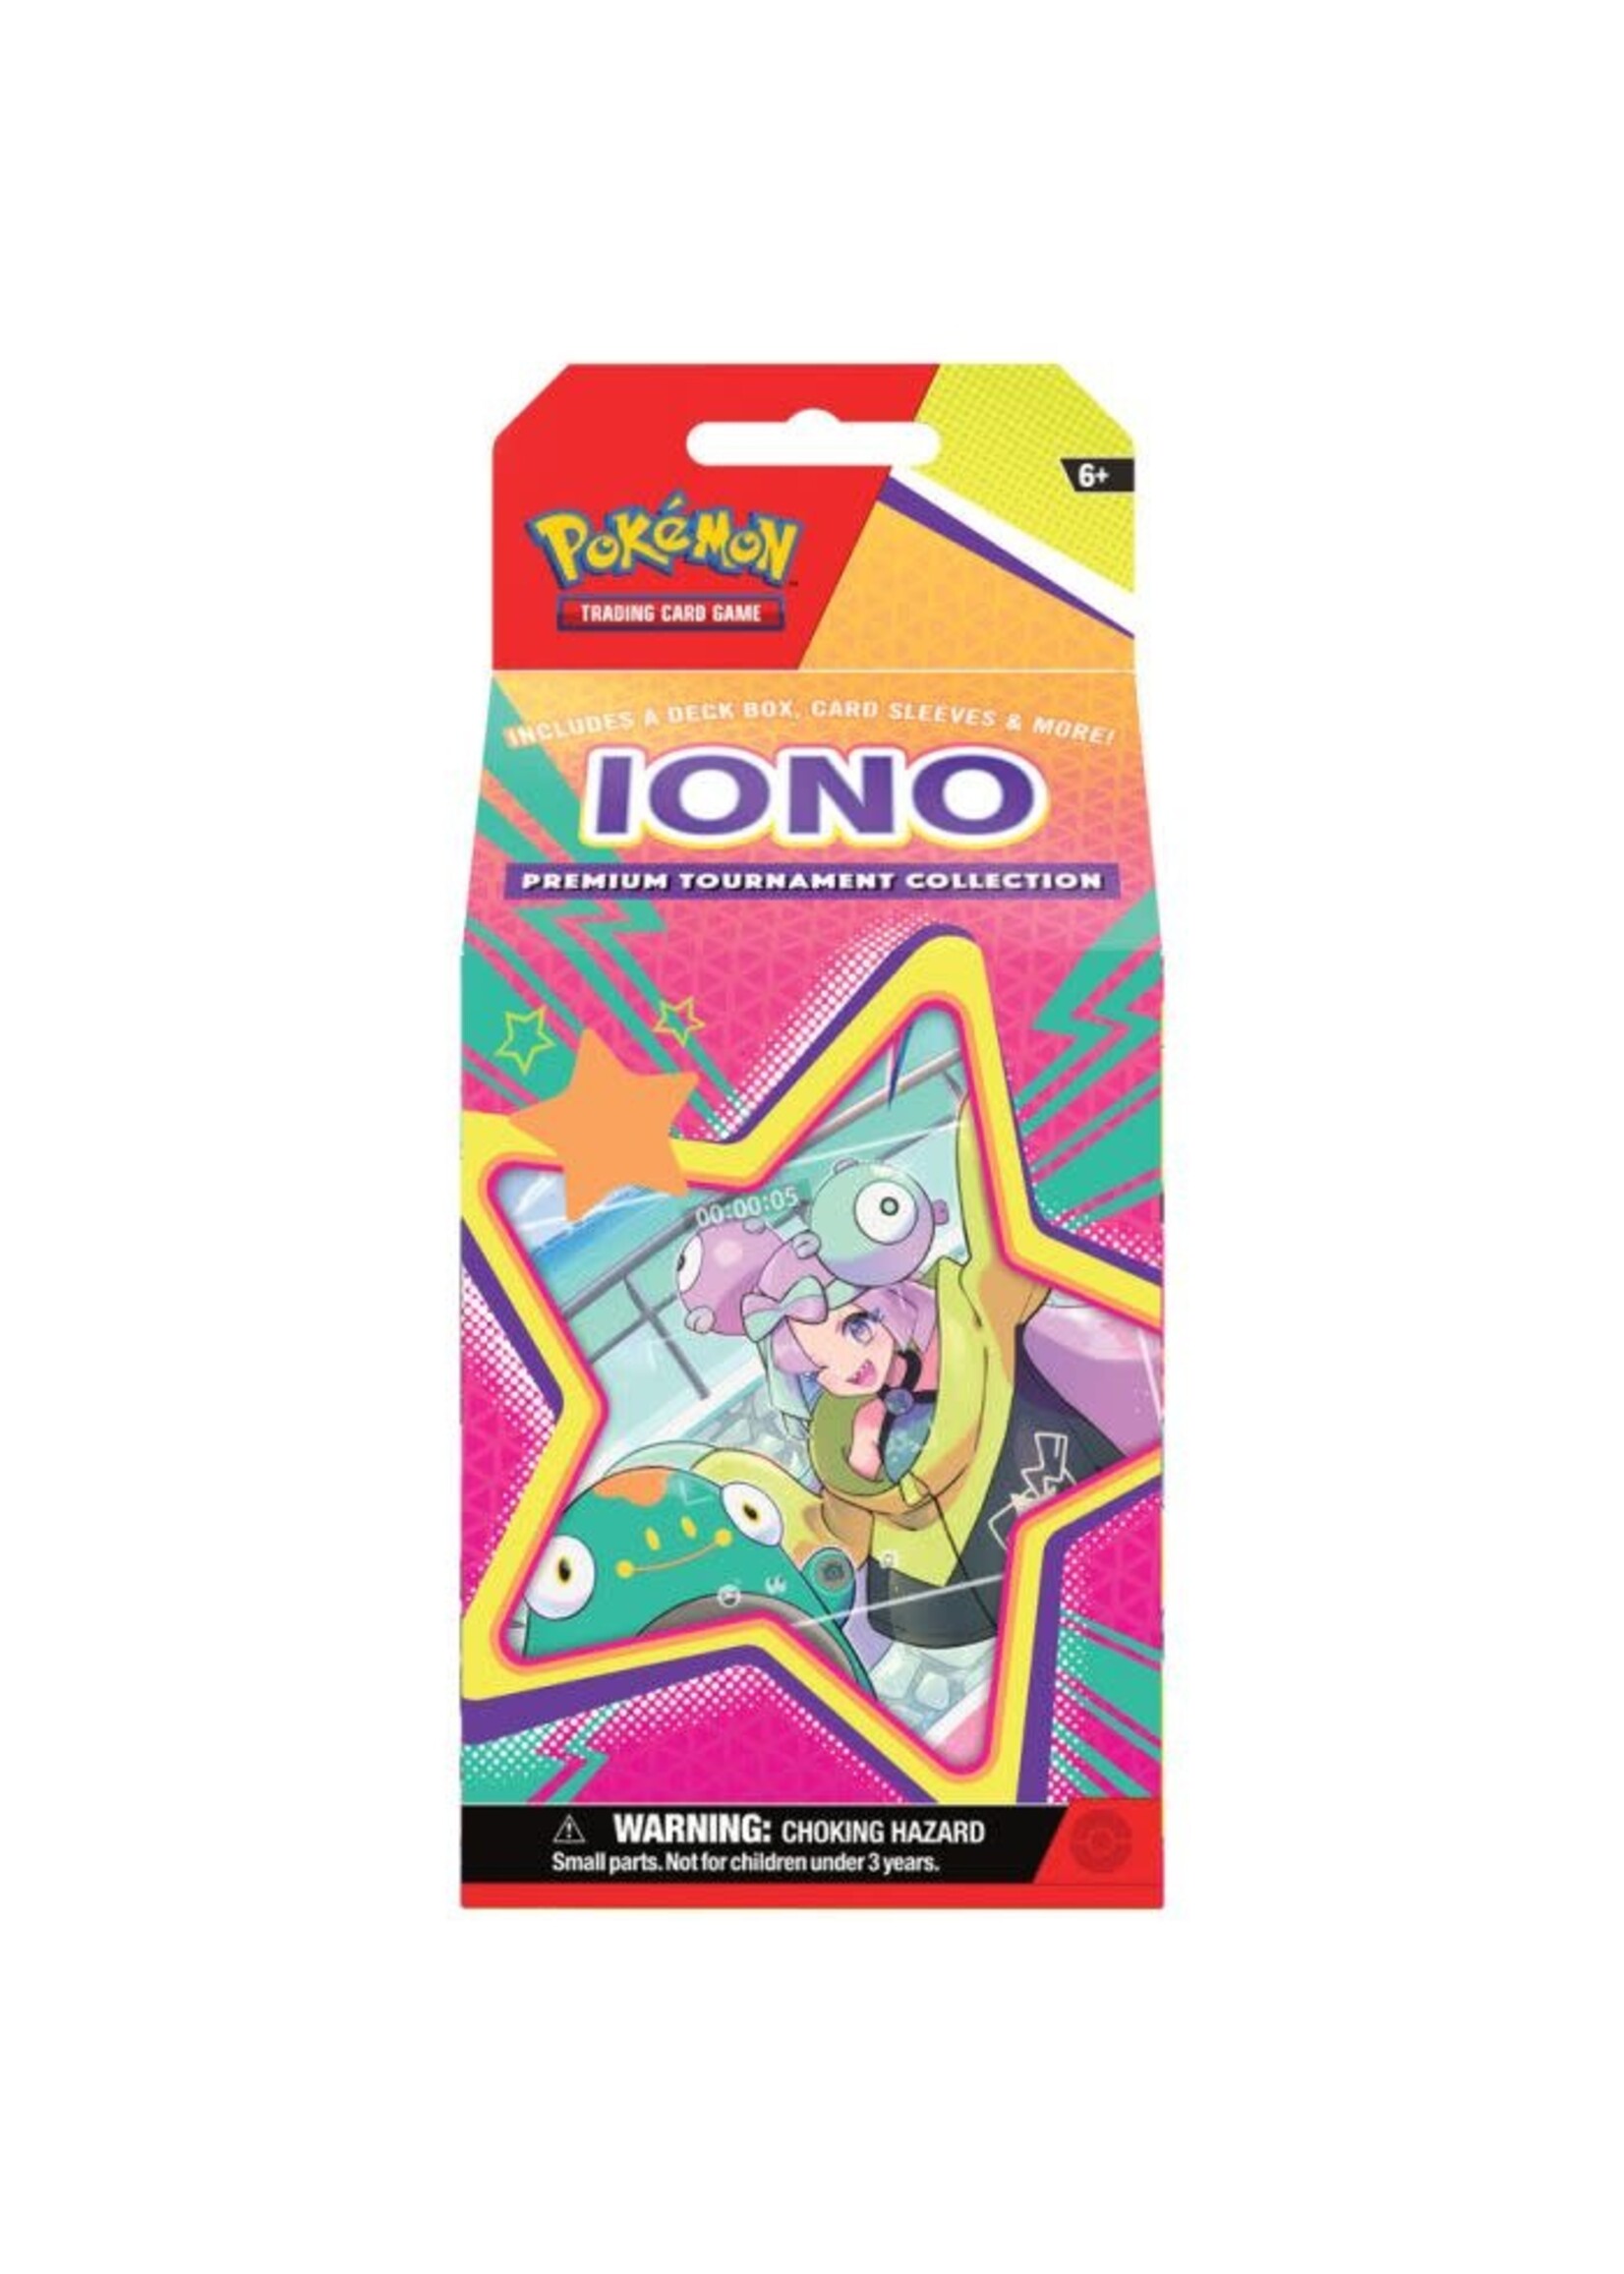 Pokemon Pokémon: Iono Premium Tournament Collection